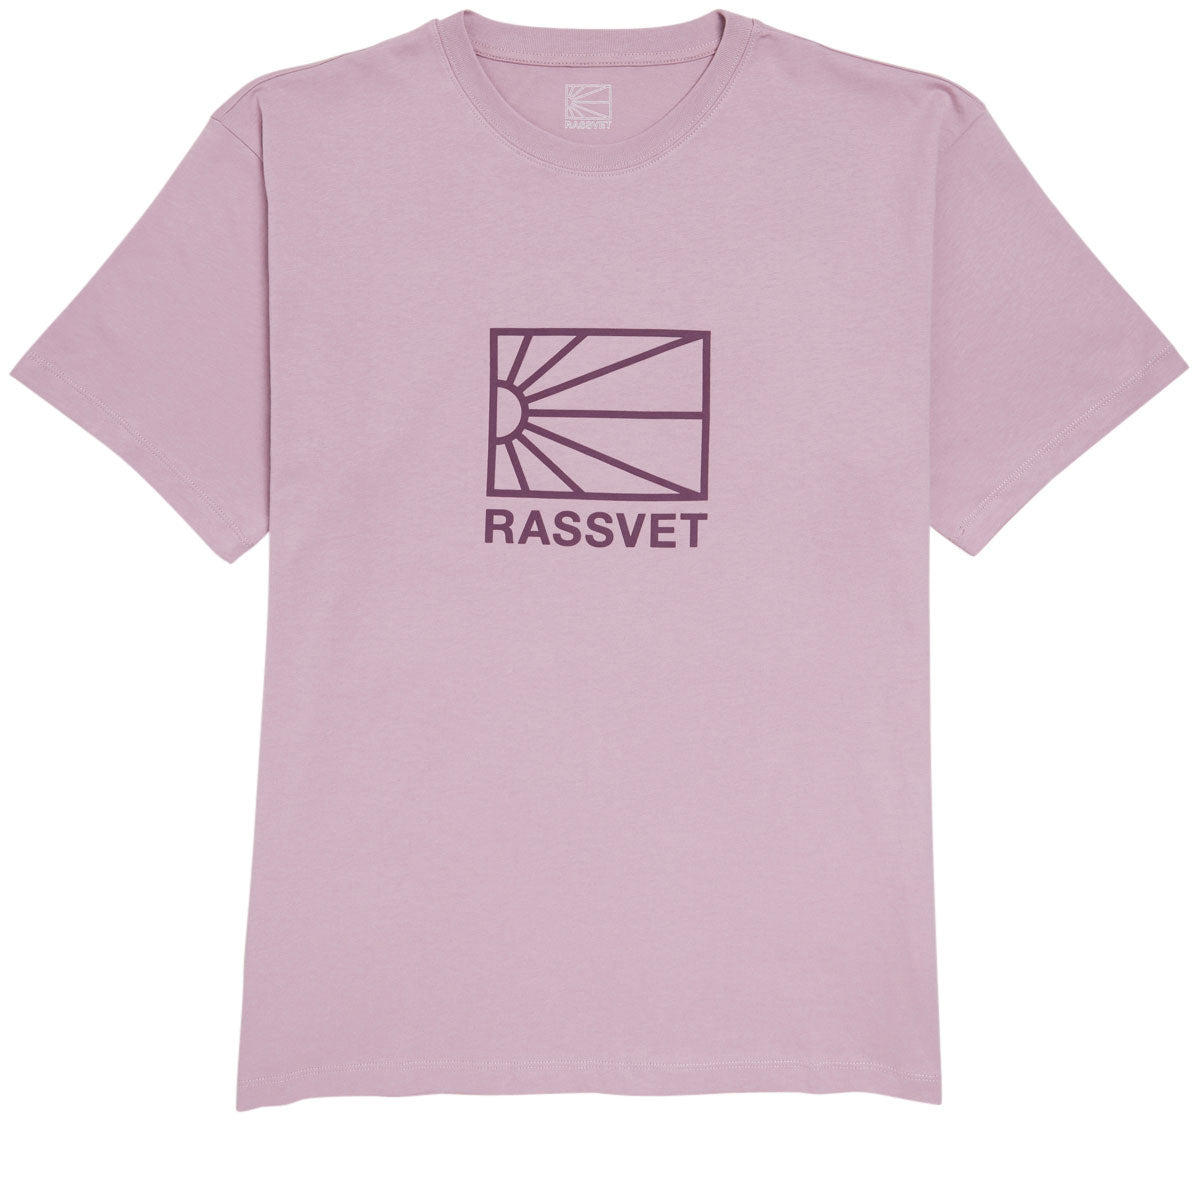 Rassvet Big Logo T-Shirt - Pink image 1